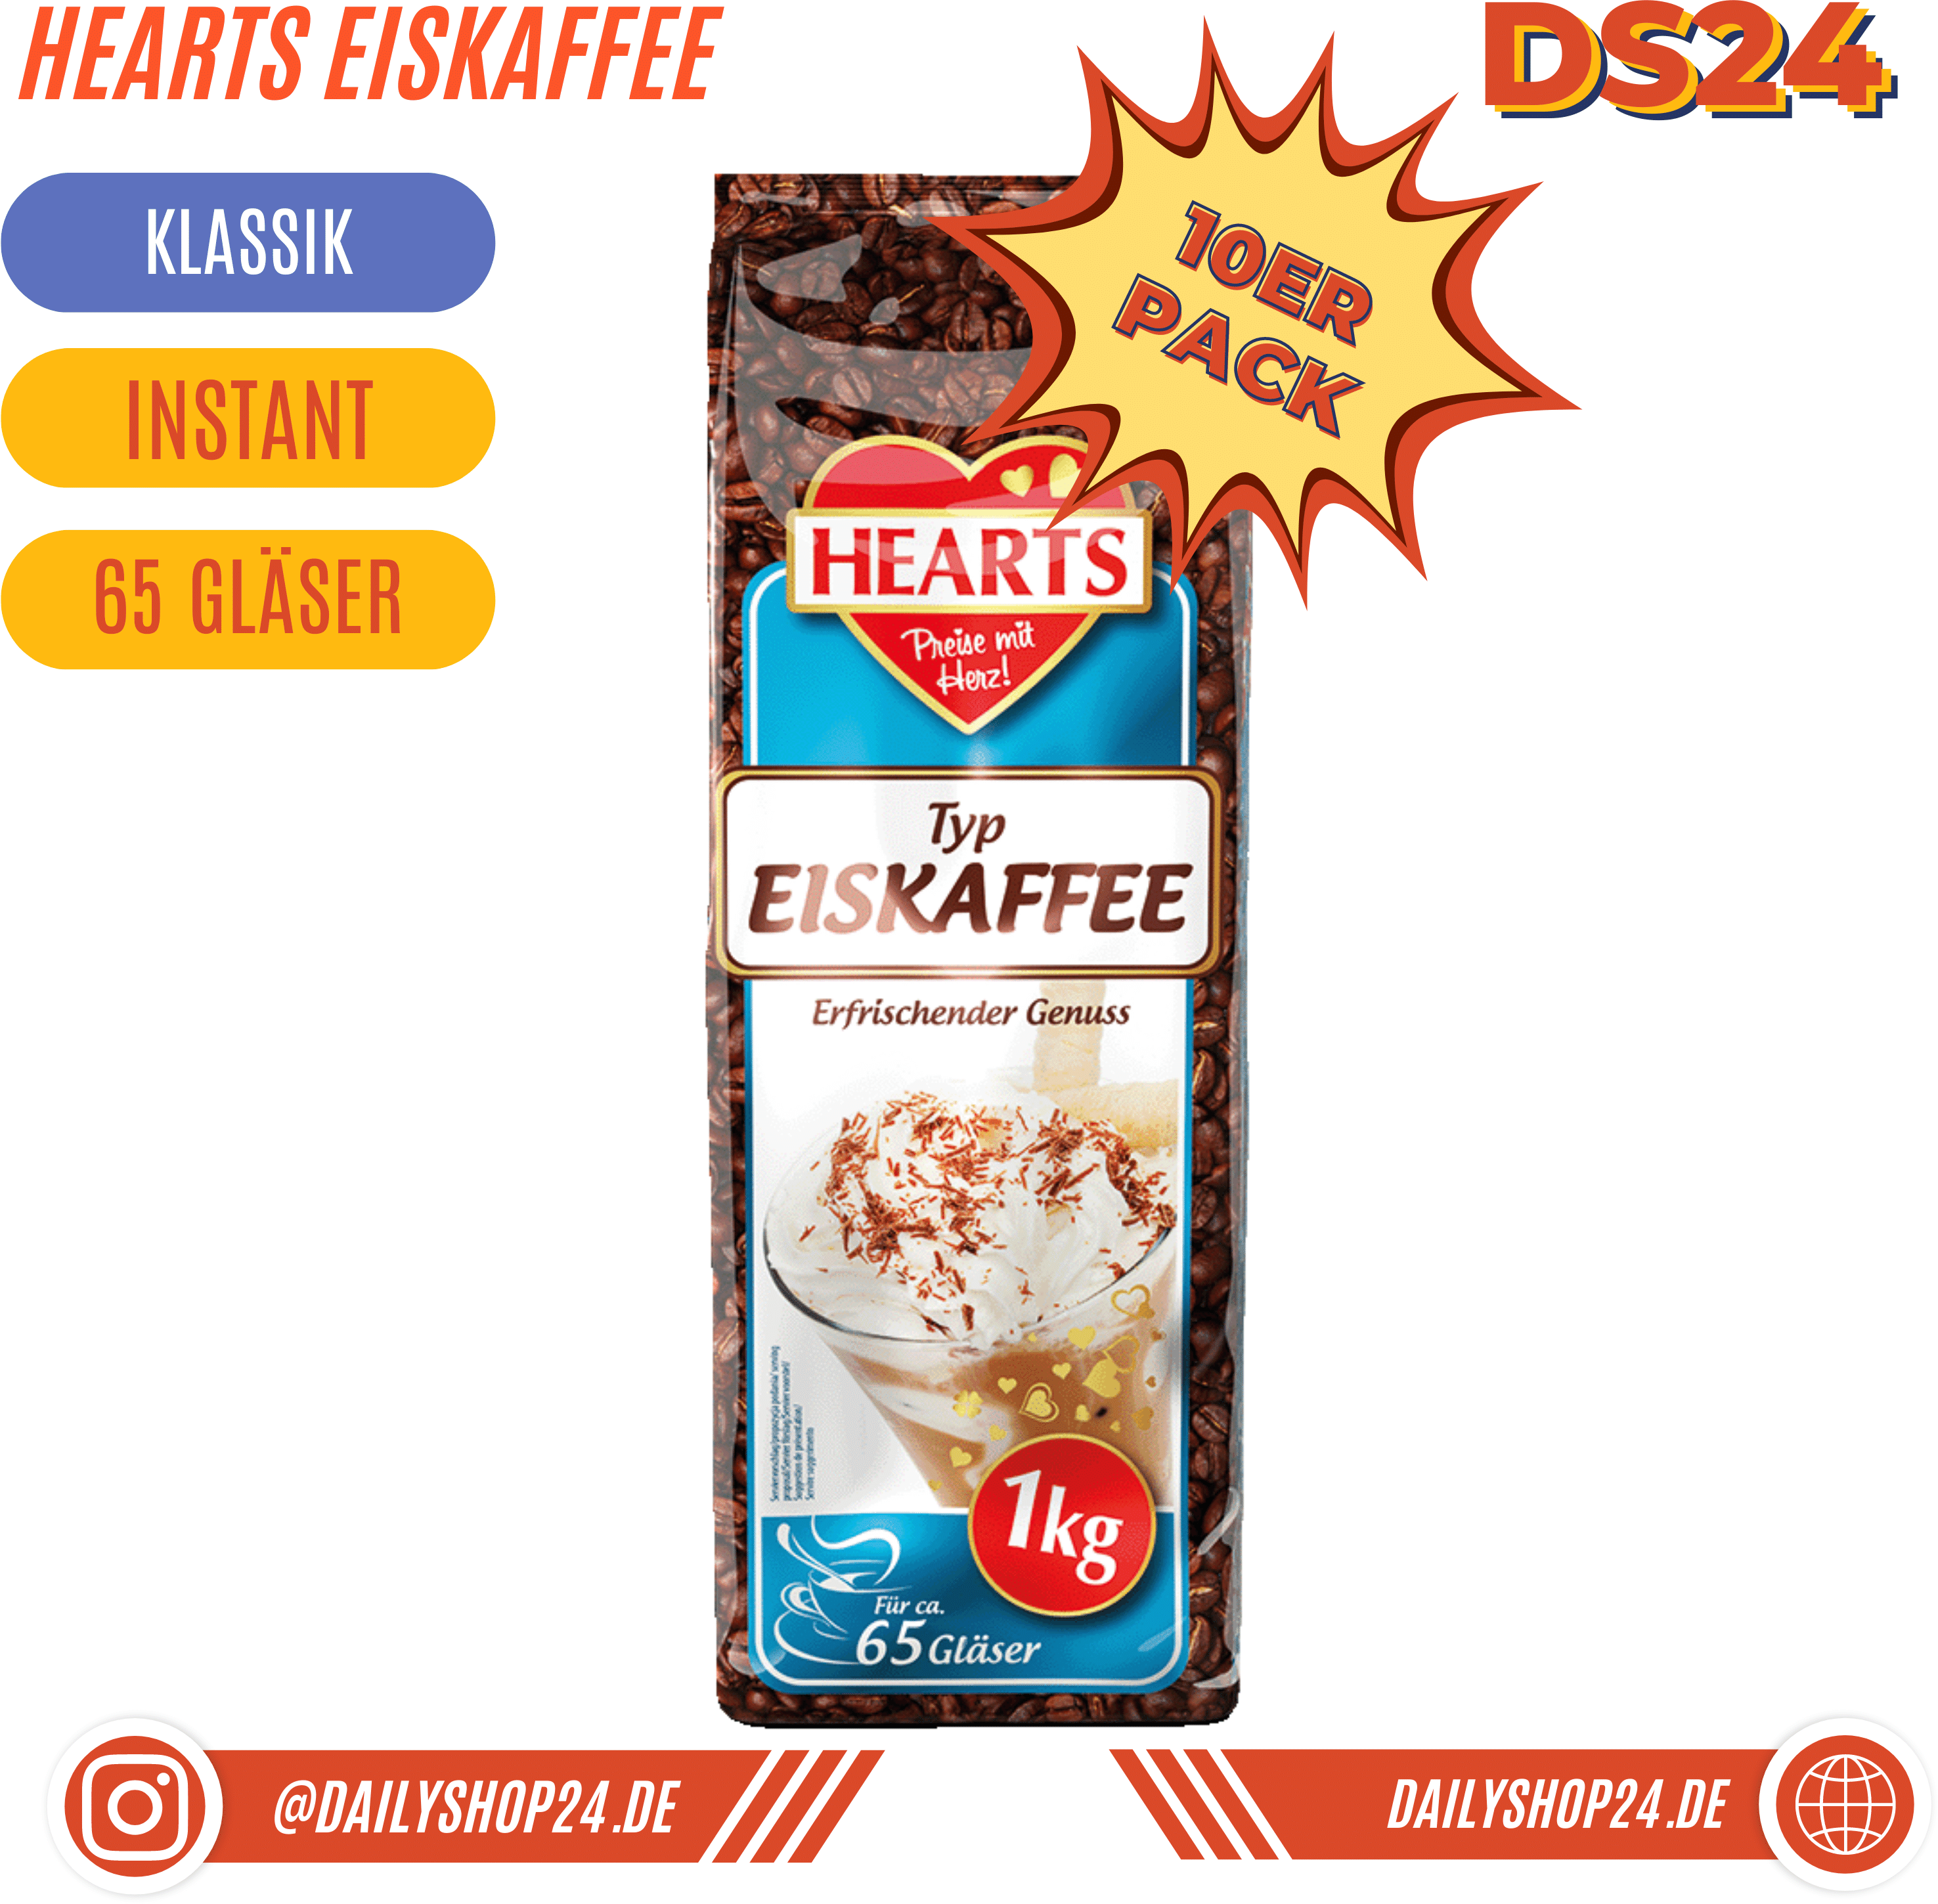 HEARTS Eiskaffee - 10 St√ock Vorteilspack / Eiskaffee